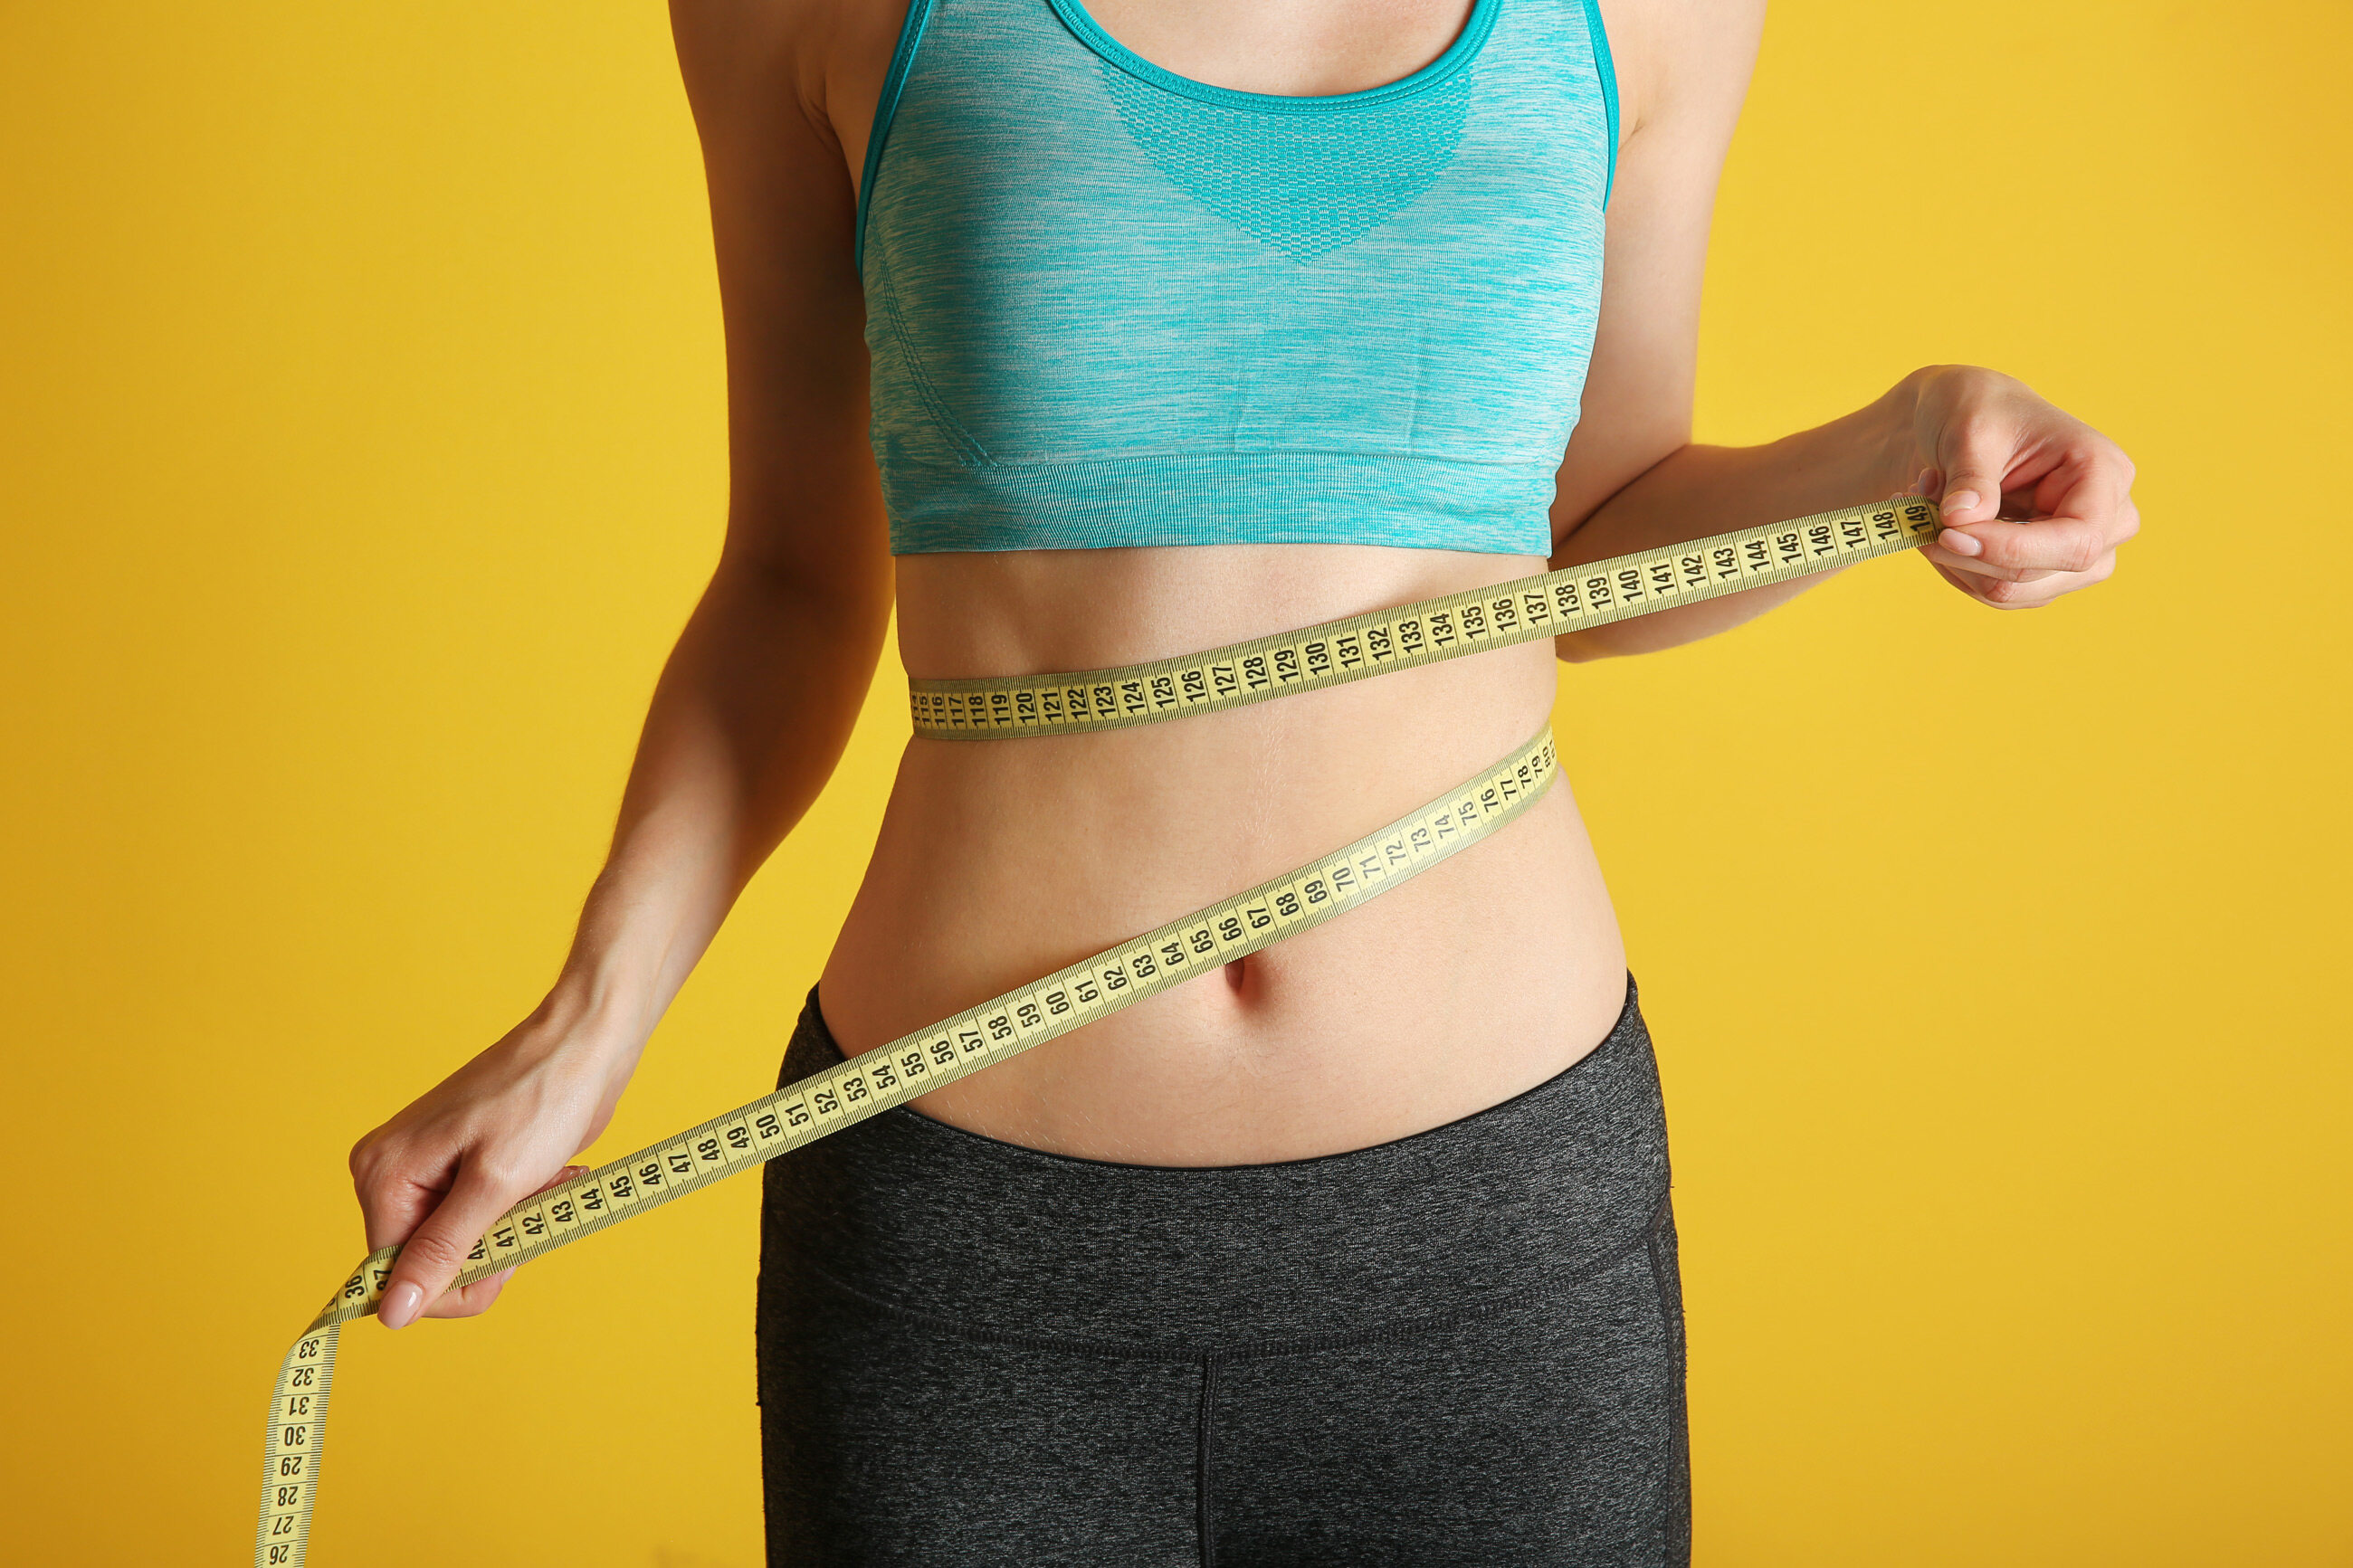 Średnia zawartość tkanki tłuszczowej zgromadzonej w ciele kobiety wynosi: